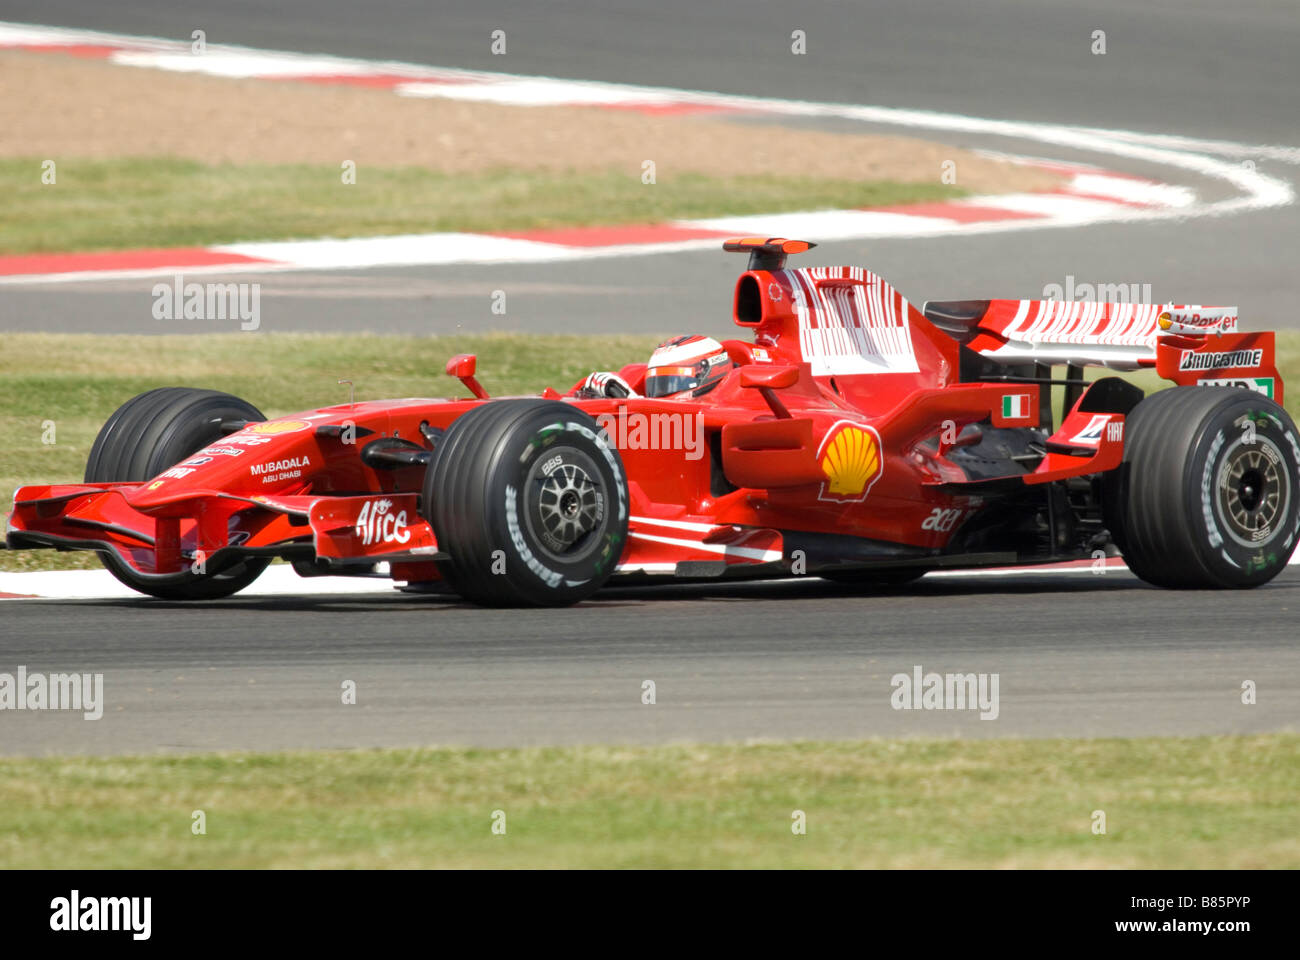 Kimi Raikkonen at the British Grand Prix 2008 Stock Photo